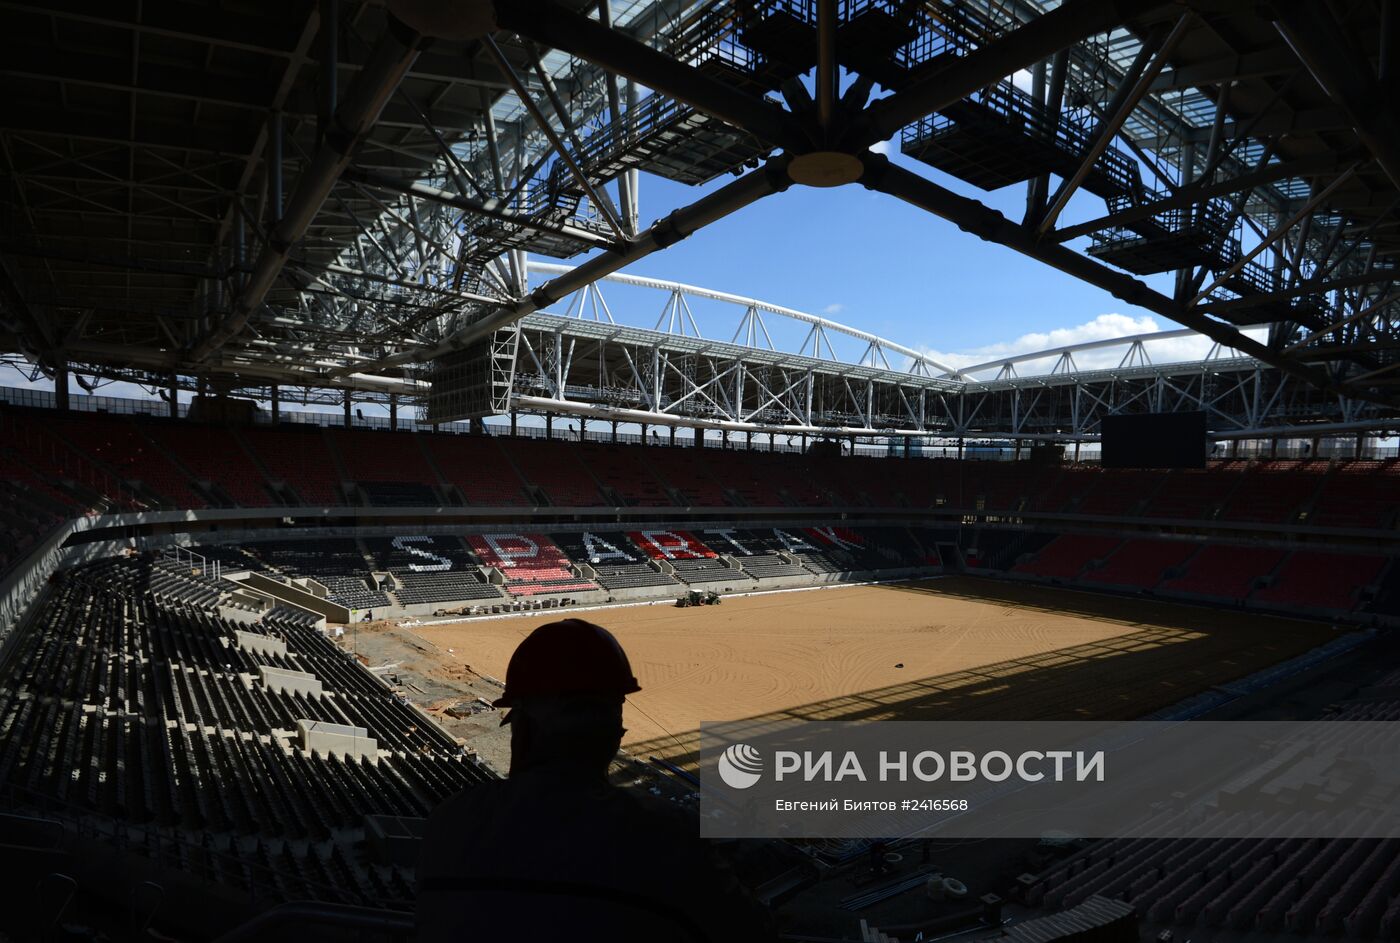 Е.Титов и Е.Кафельников посетили строительство стадиона "Открытие-Арена"